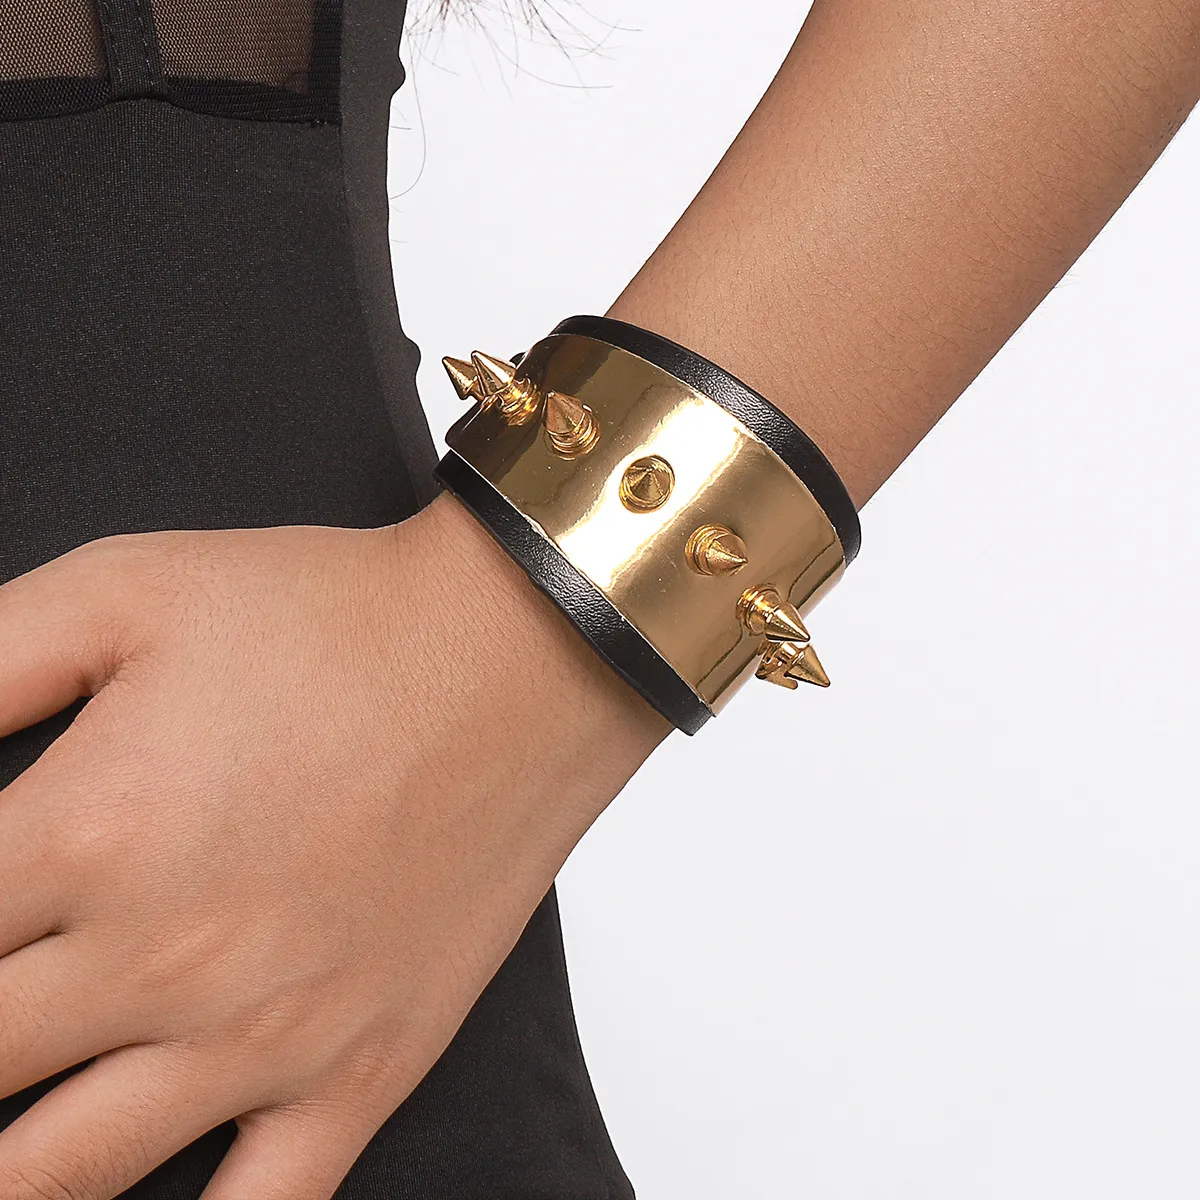 Nuevo pulsera de cuero punk de cuero pulseras de aleación pulsera de oro chapada para mujeres accesorios de joyería de moda